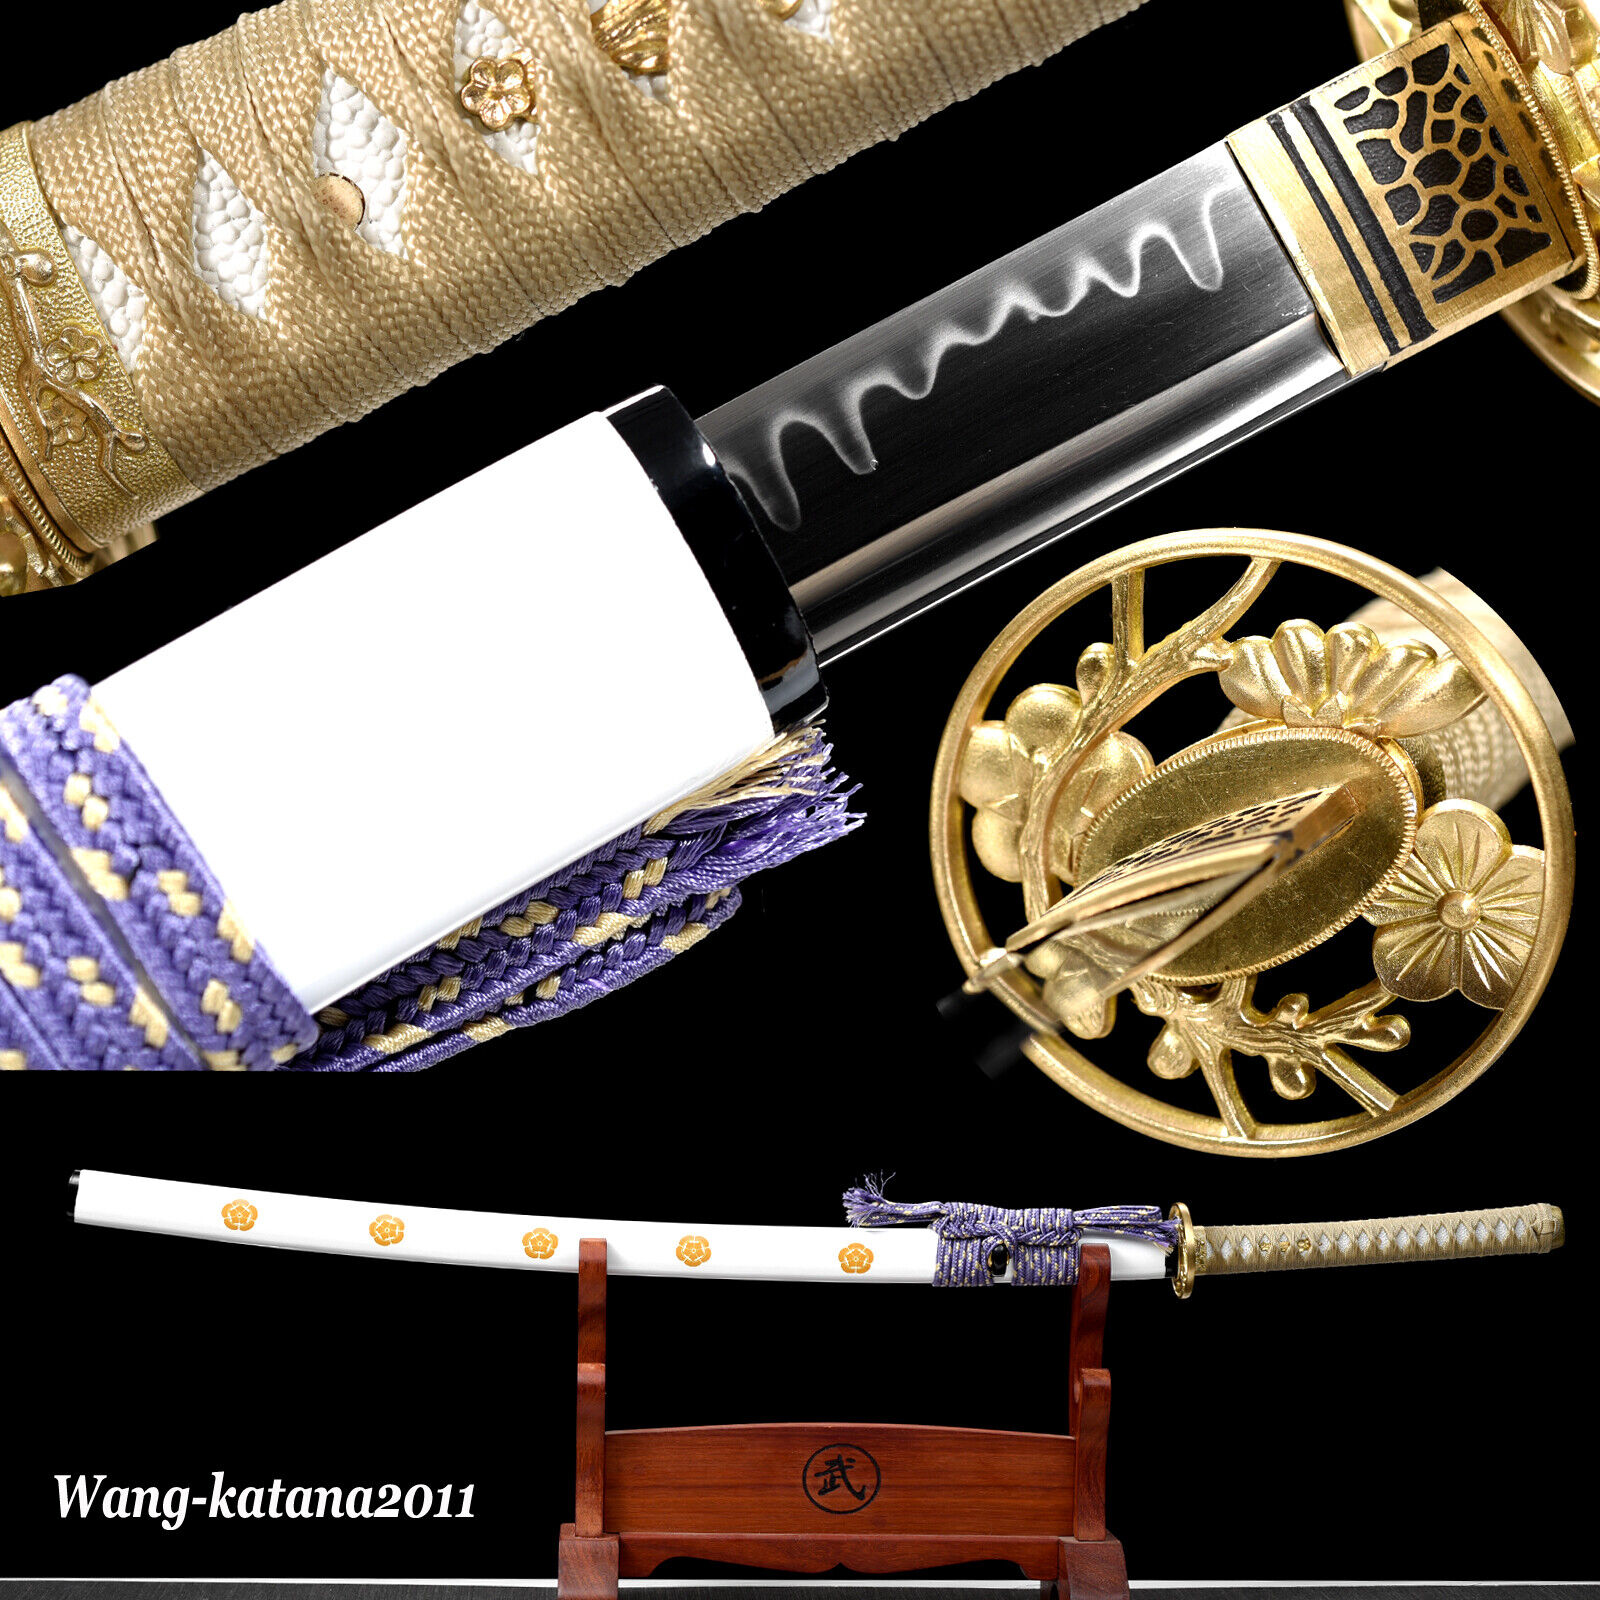 MCUSTA Clay Tempered T10 Katana Flower Unique Japanese Samurai Functional Sword